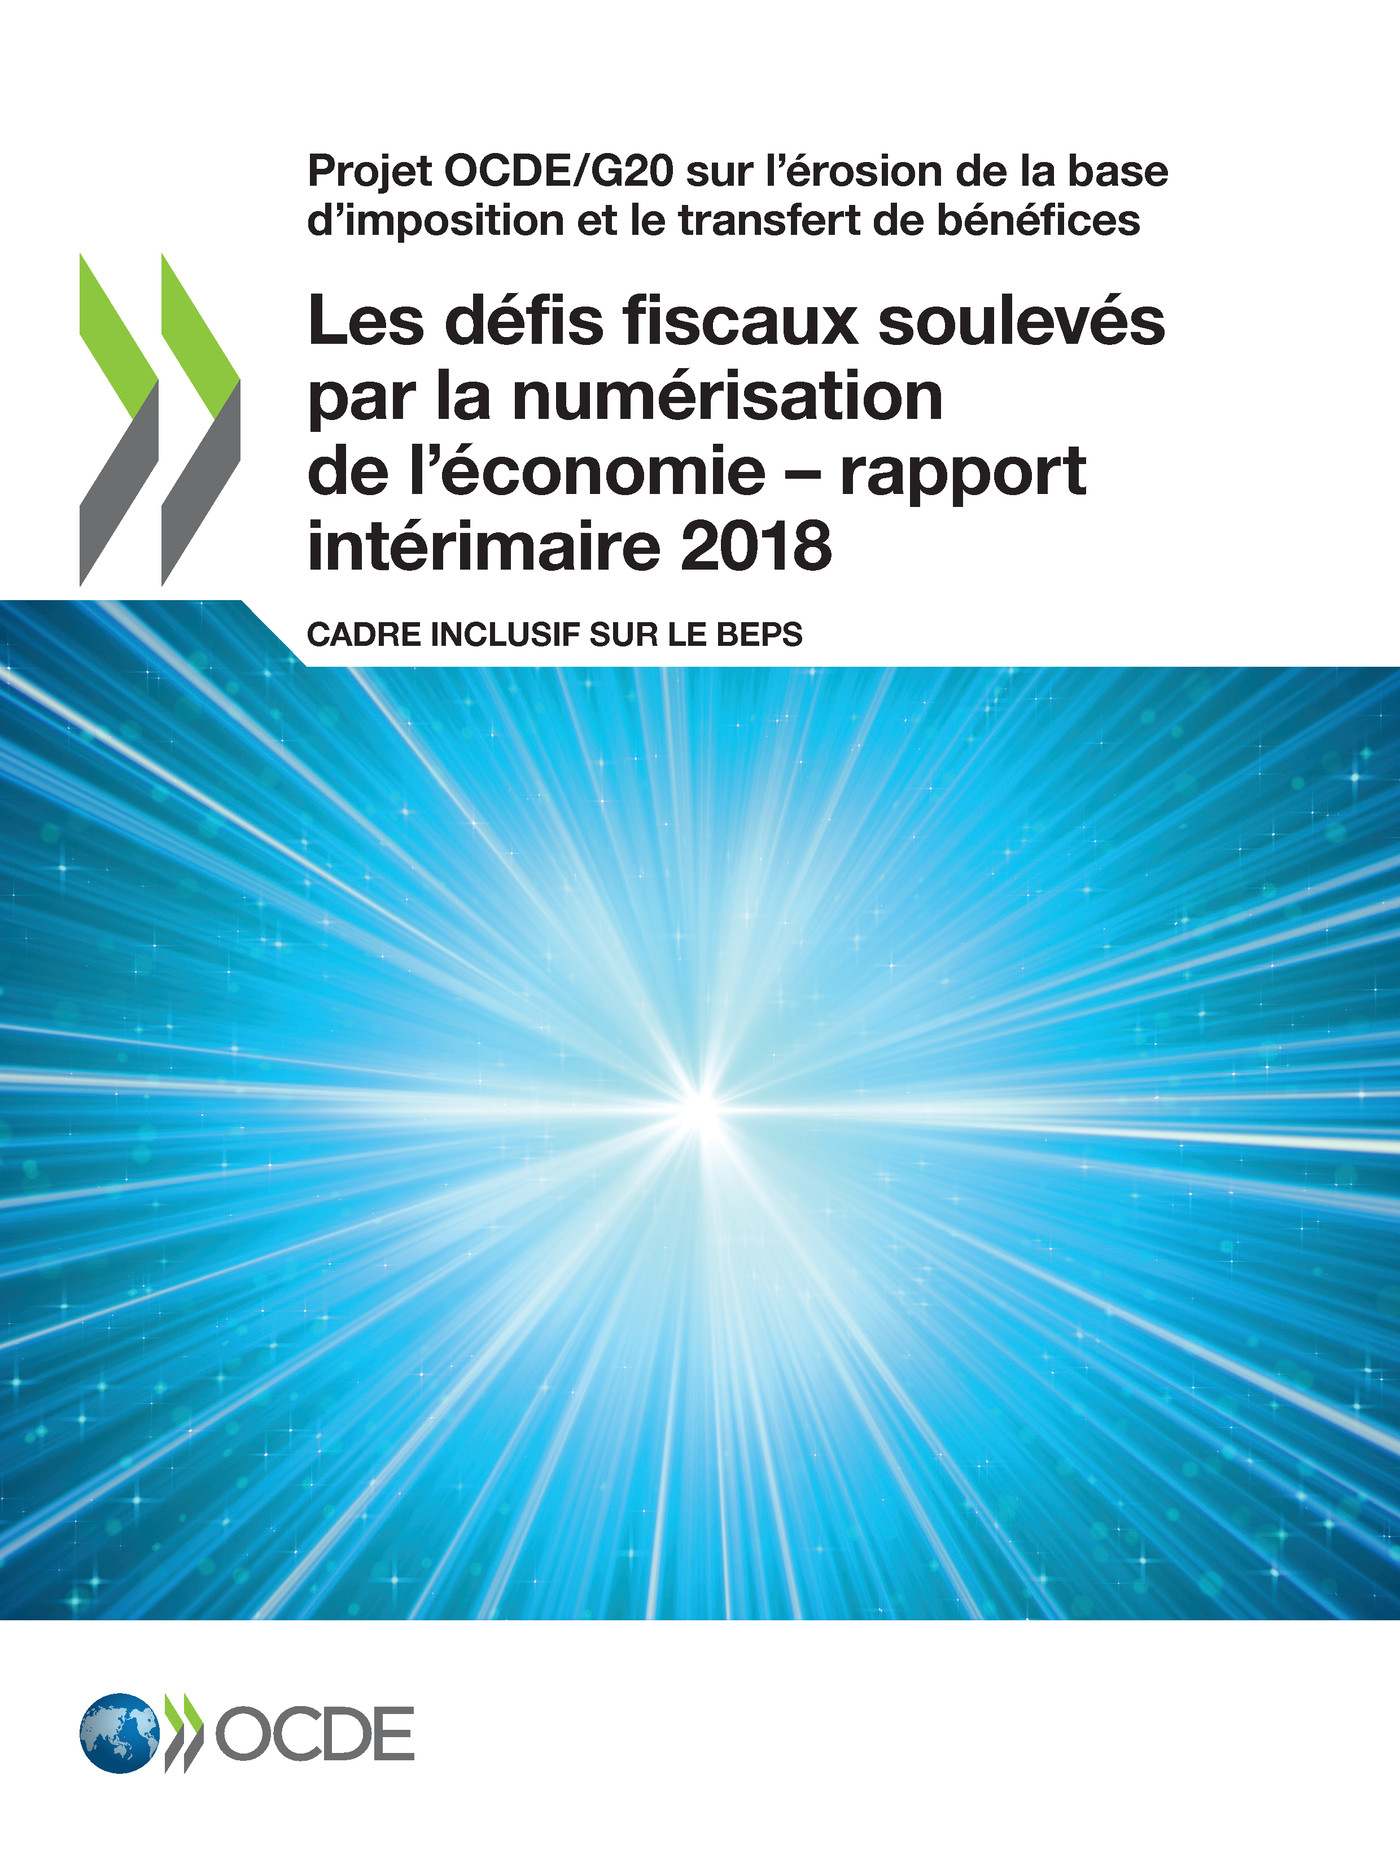 Les défis fiscaux soulevés par la numérisation de l'économie – rapport intérimaire 2018 -  Collectif - OCDE / OECD